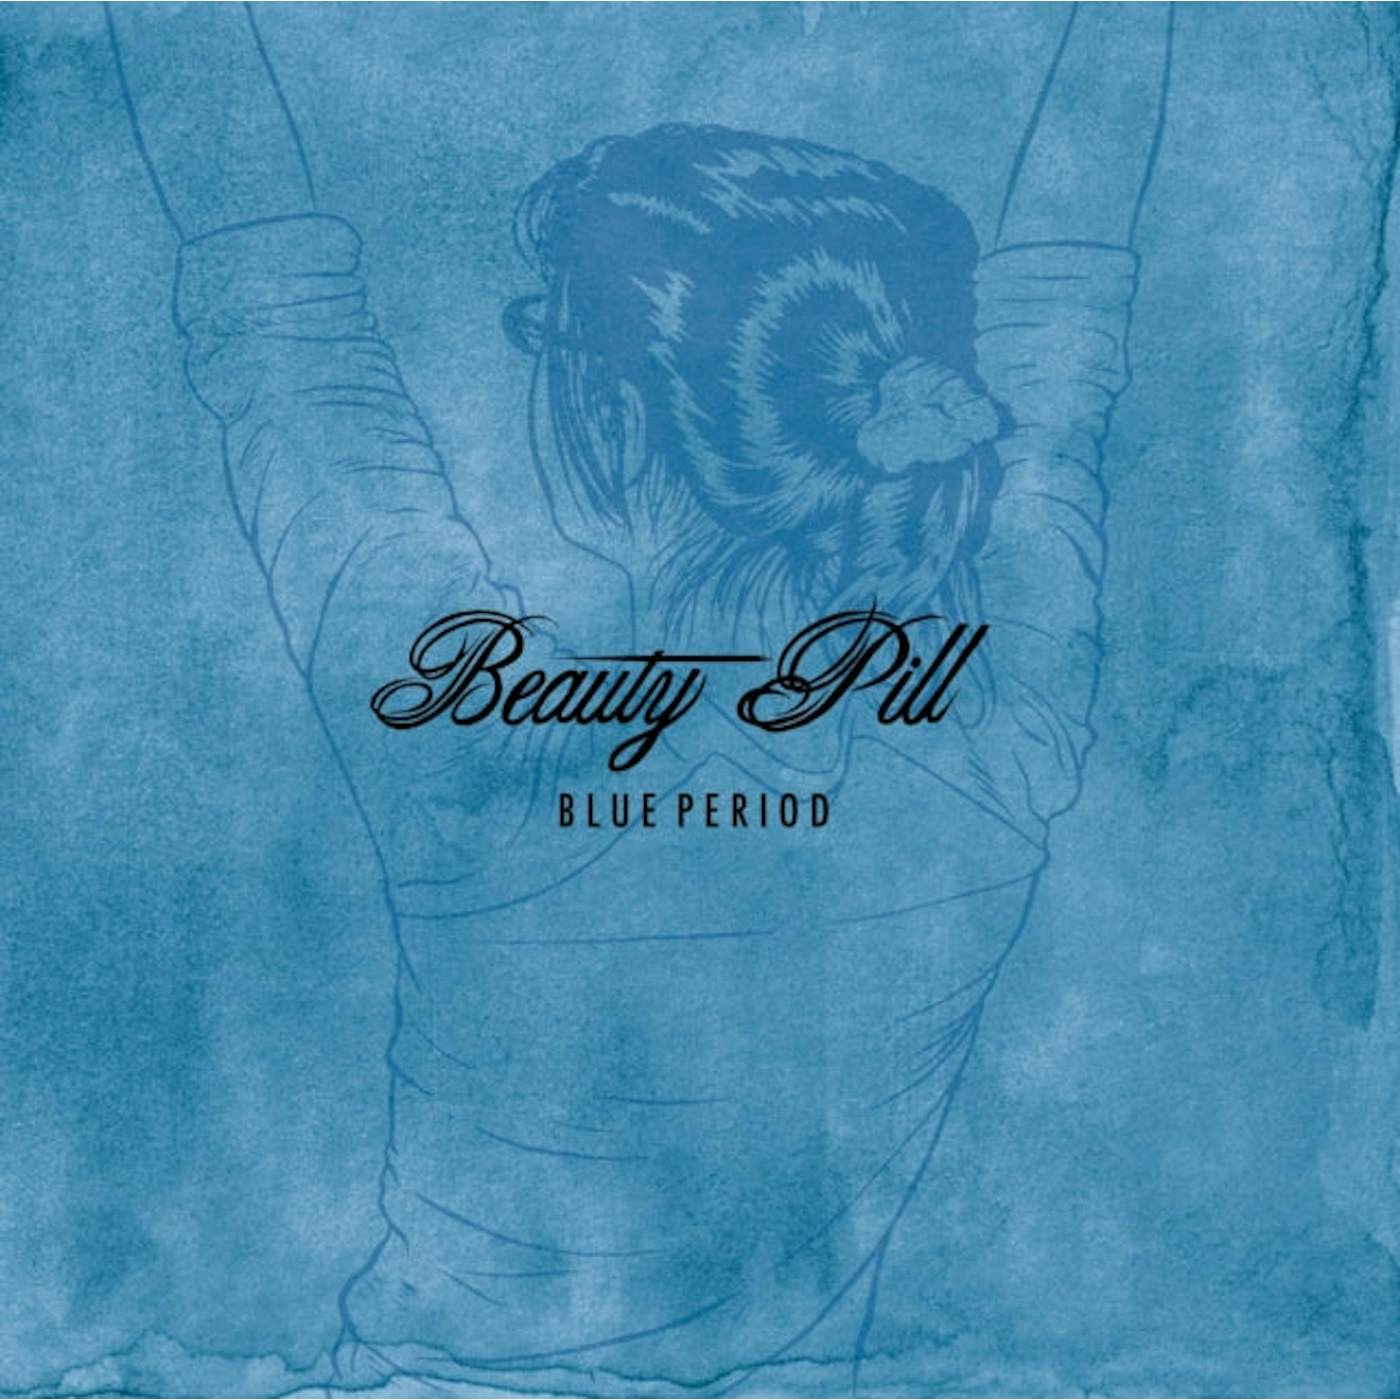 Beauty Pill LP - Blue Period (Vinyl)